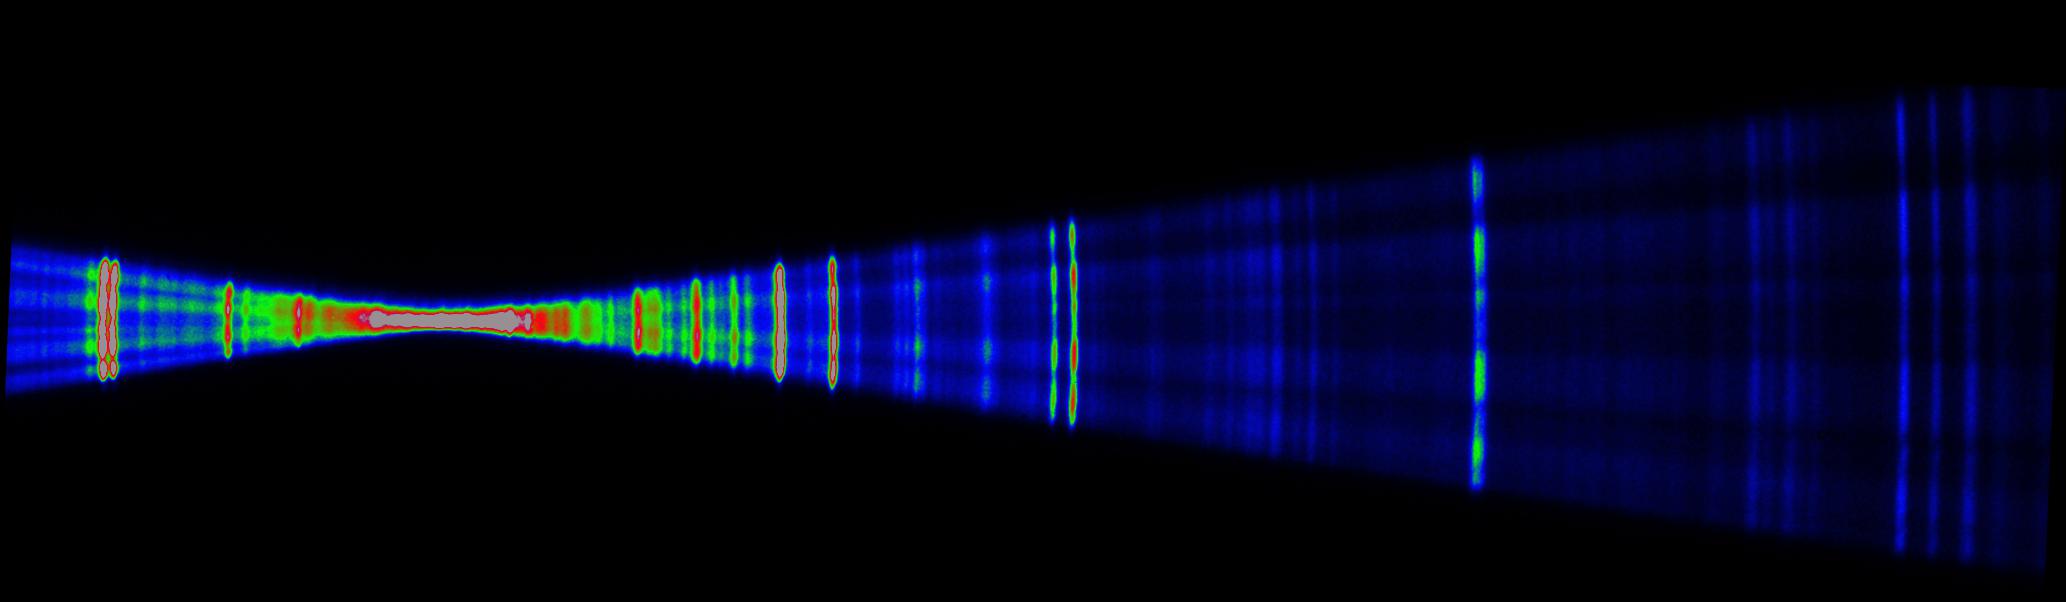 Abbildung: Die polychromatische Strahlung der LPP wird durch die RZP Optiken aufgespalten und auf eine röngensensitive Kamera abgebildet. Durch Einbringen einer Probe in den Strahlengang sind Absorptionsmessungen möglich.